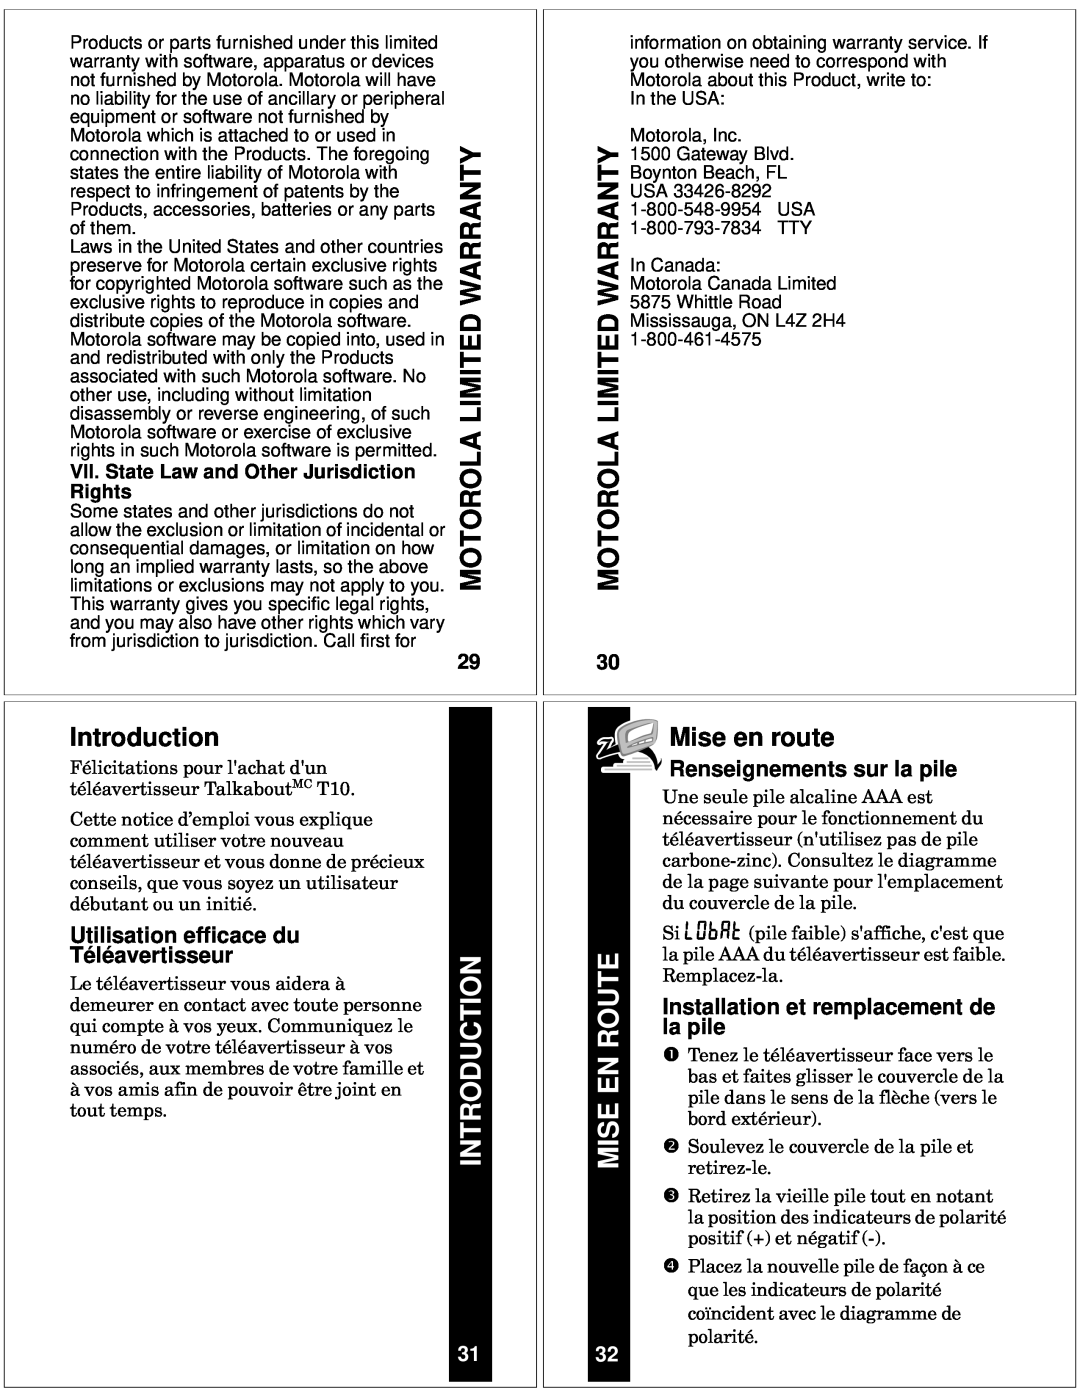 Motorola T10 manual Limited, Mise en route, Utilisation efficace du, Téléavertisseur, Renseignements sur la pile, Rights 